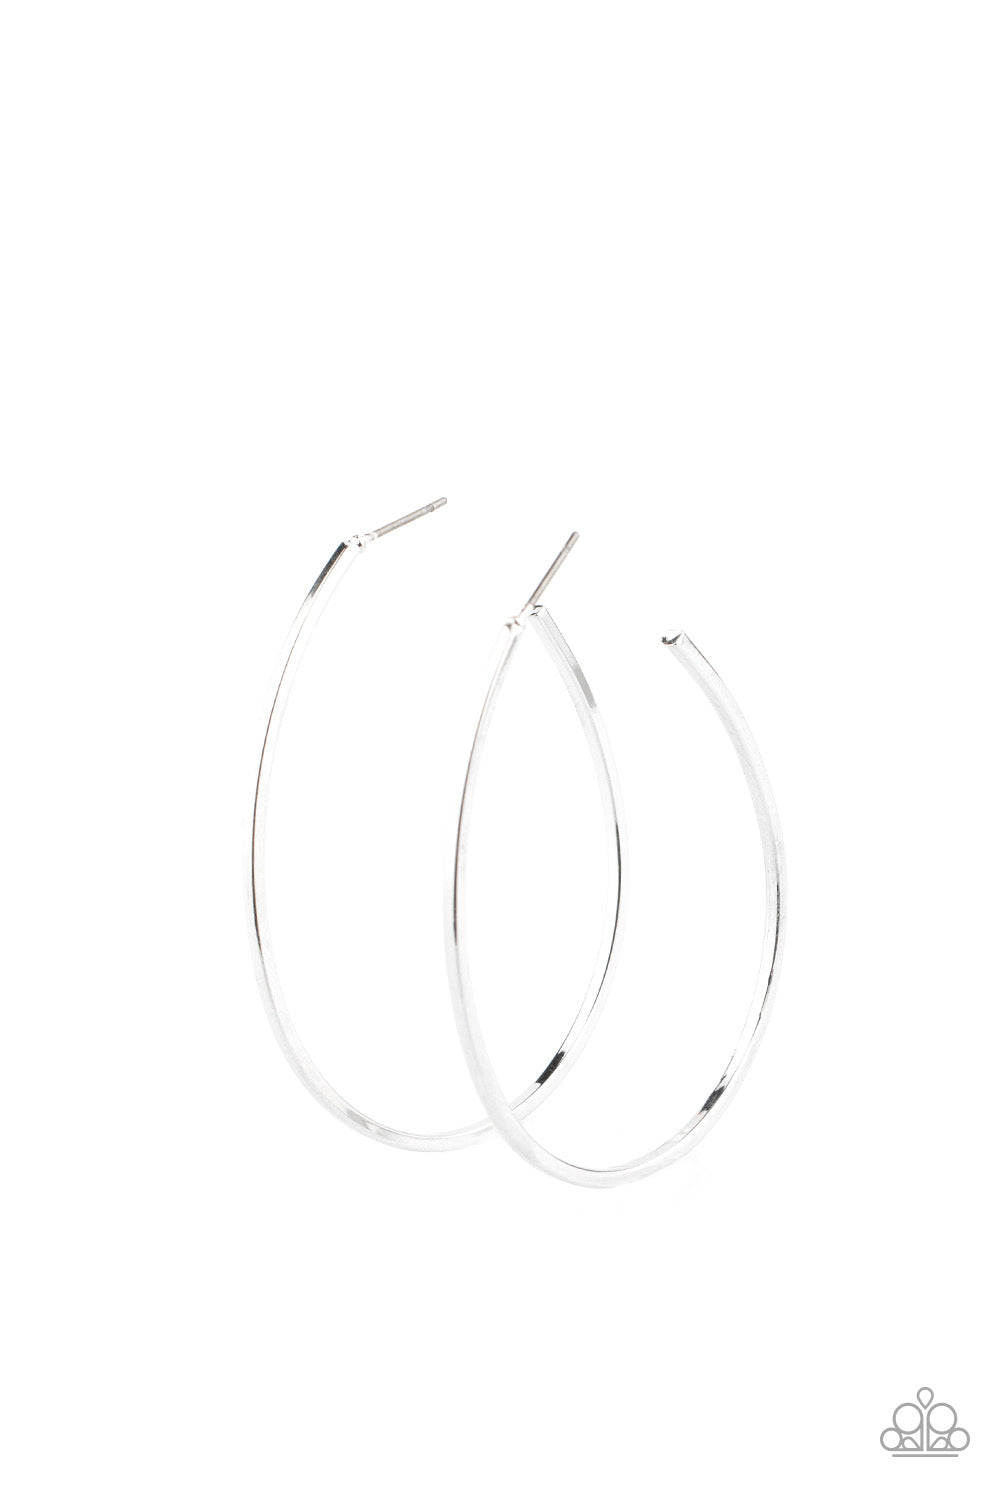 Cool Curves Earrings - Silver Hoop